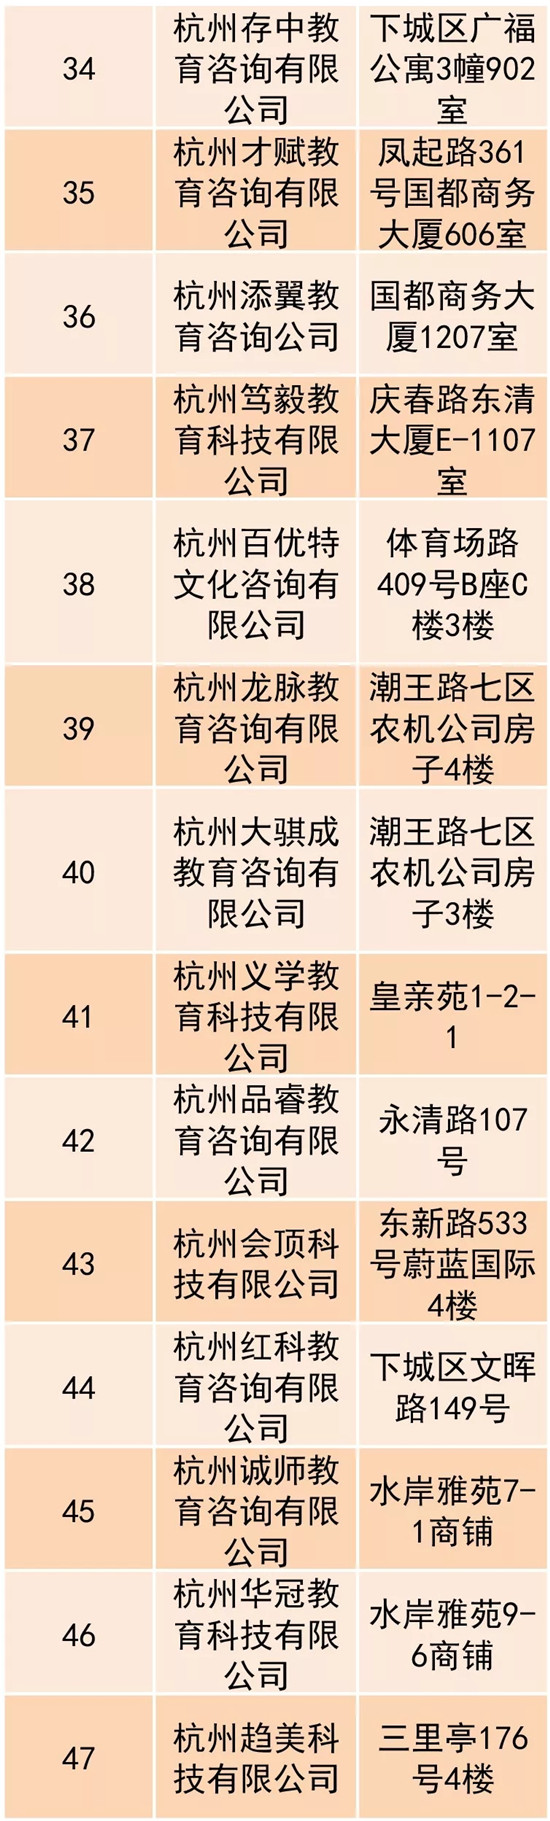 杭城首批193家培训黑名单出炉 给娃报班记得绕道